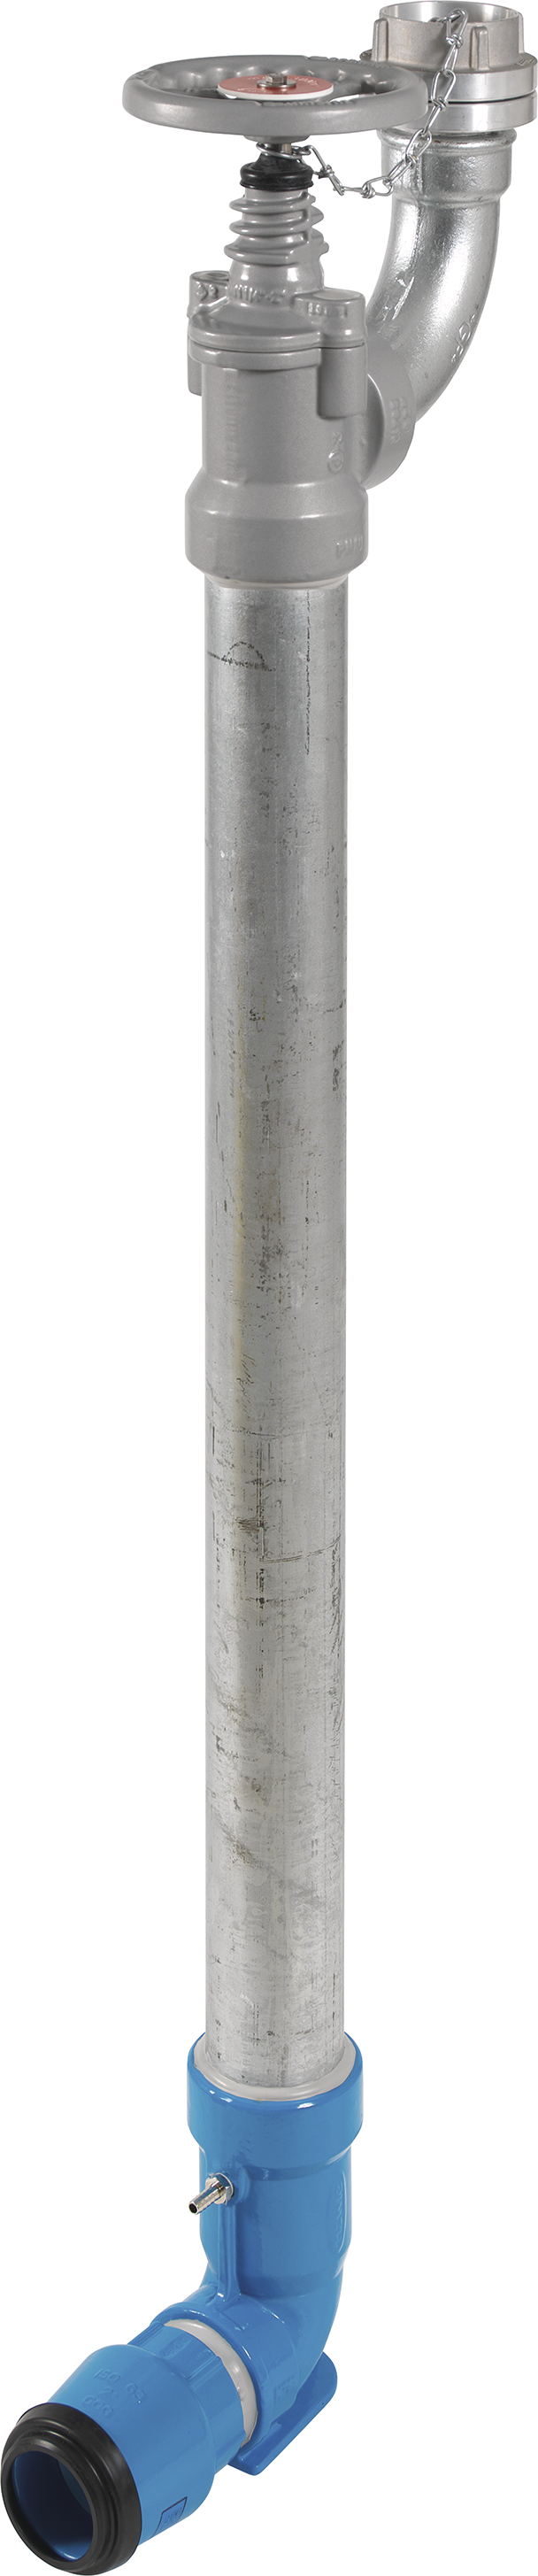 Bewässerungshydrant Unterflur N767 d 50mm, L = 1000mm - Hawle Hydranten